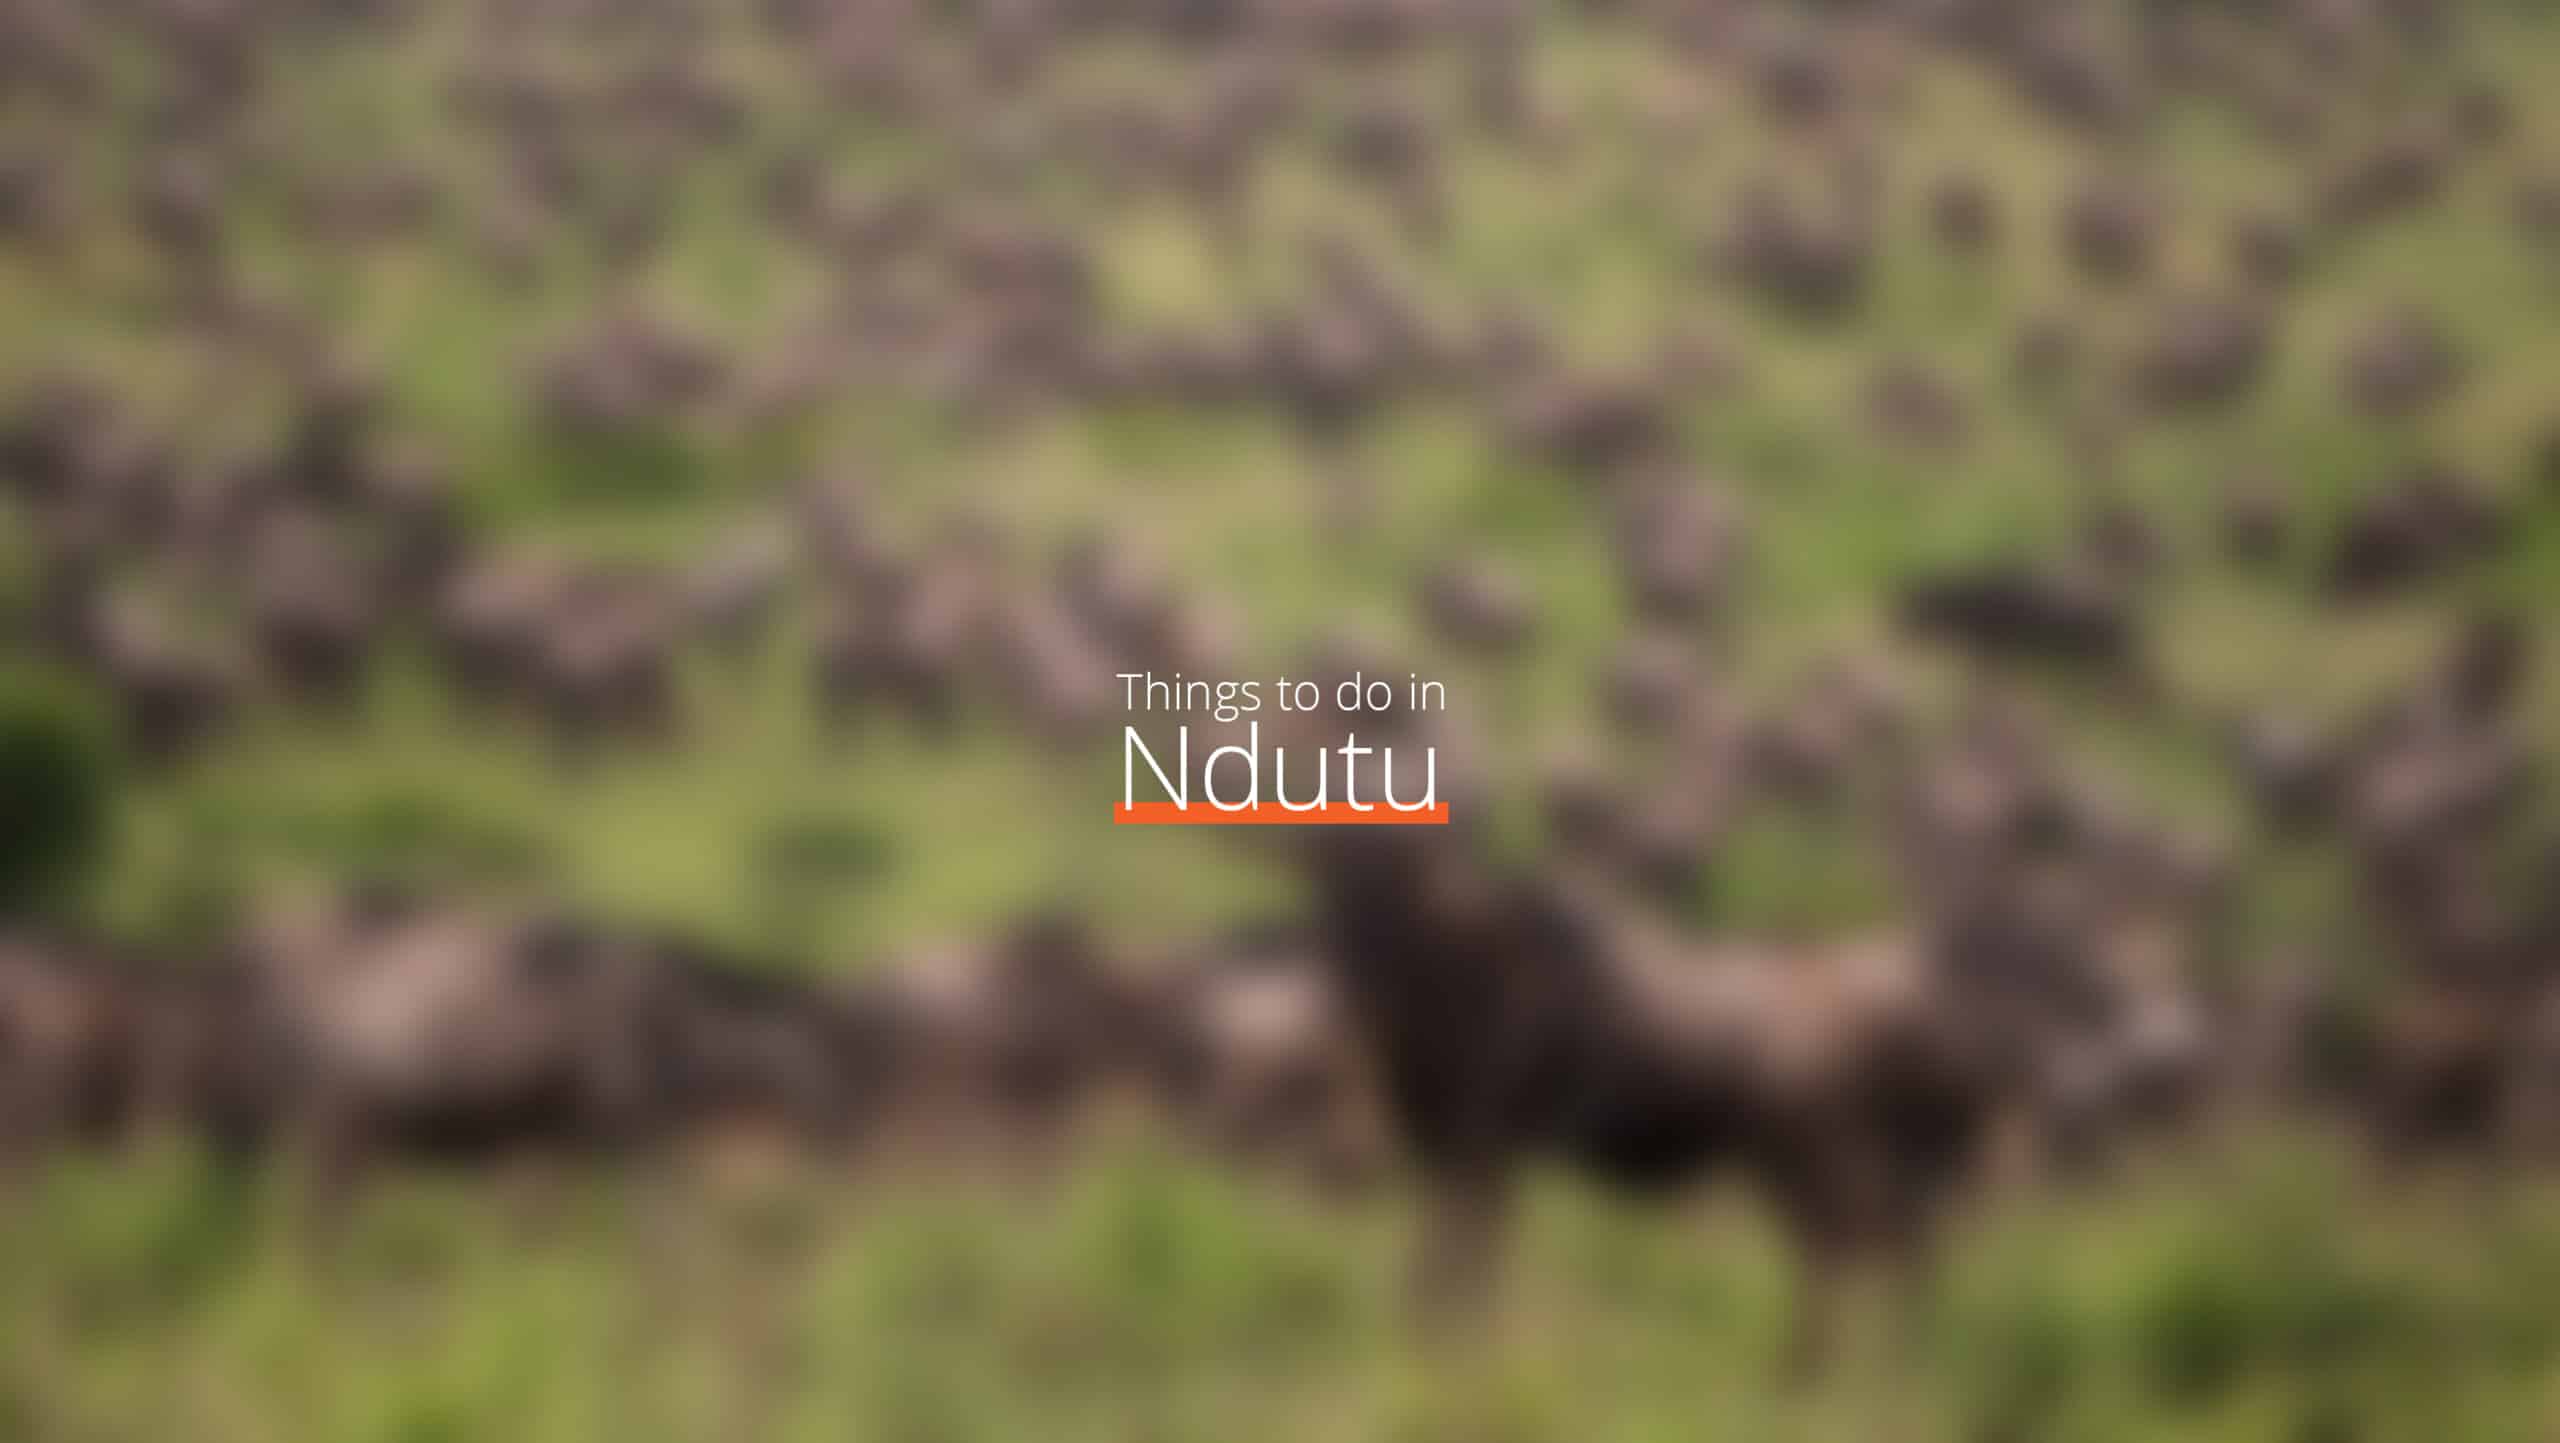 坦桑尼亚 - ndutu 缩放比例 - 12 月